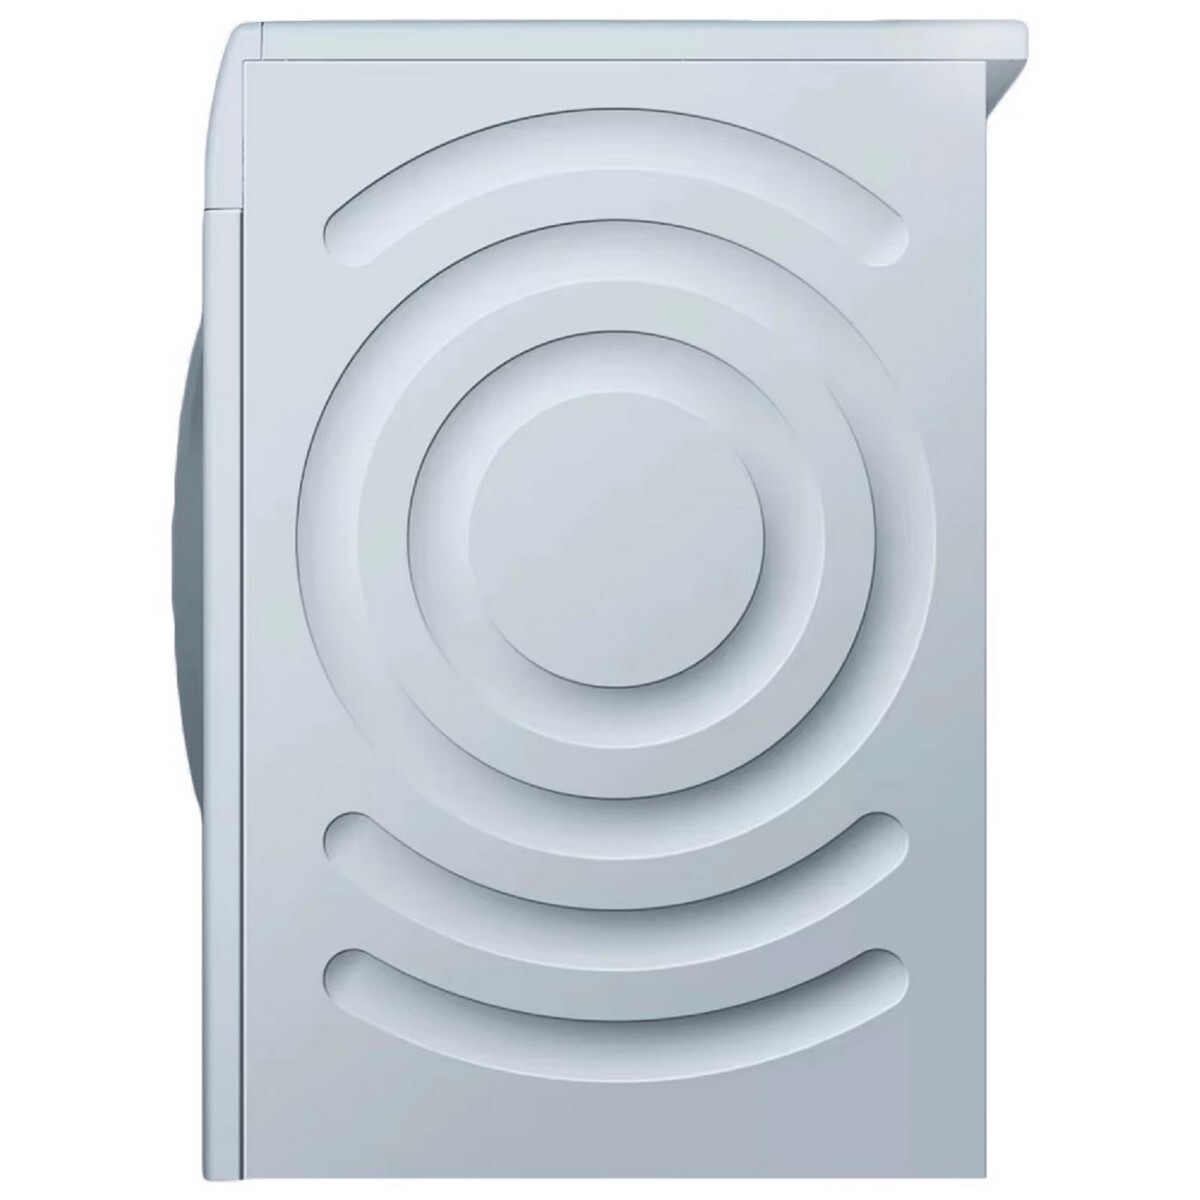 Bosch Wash Dryer WNA14400IN 9/6Kg White